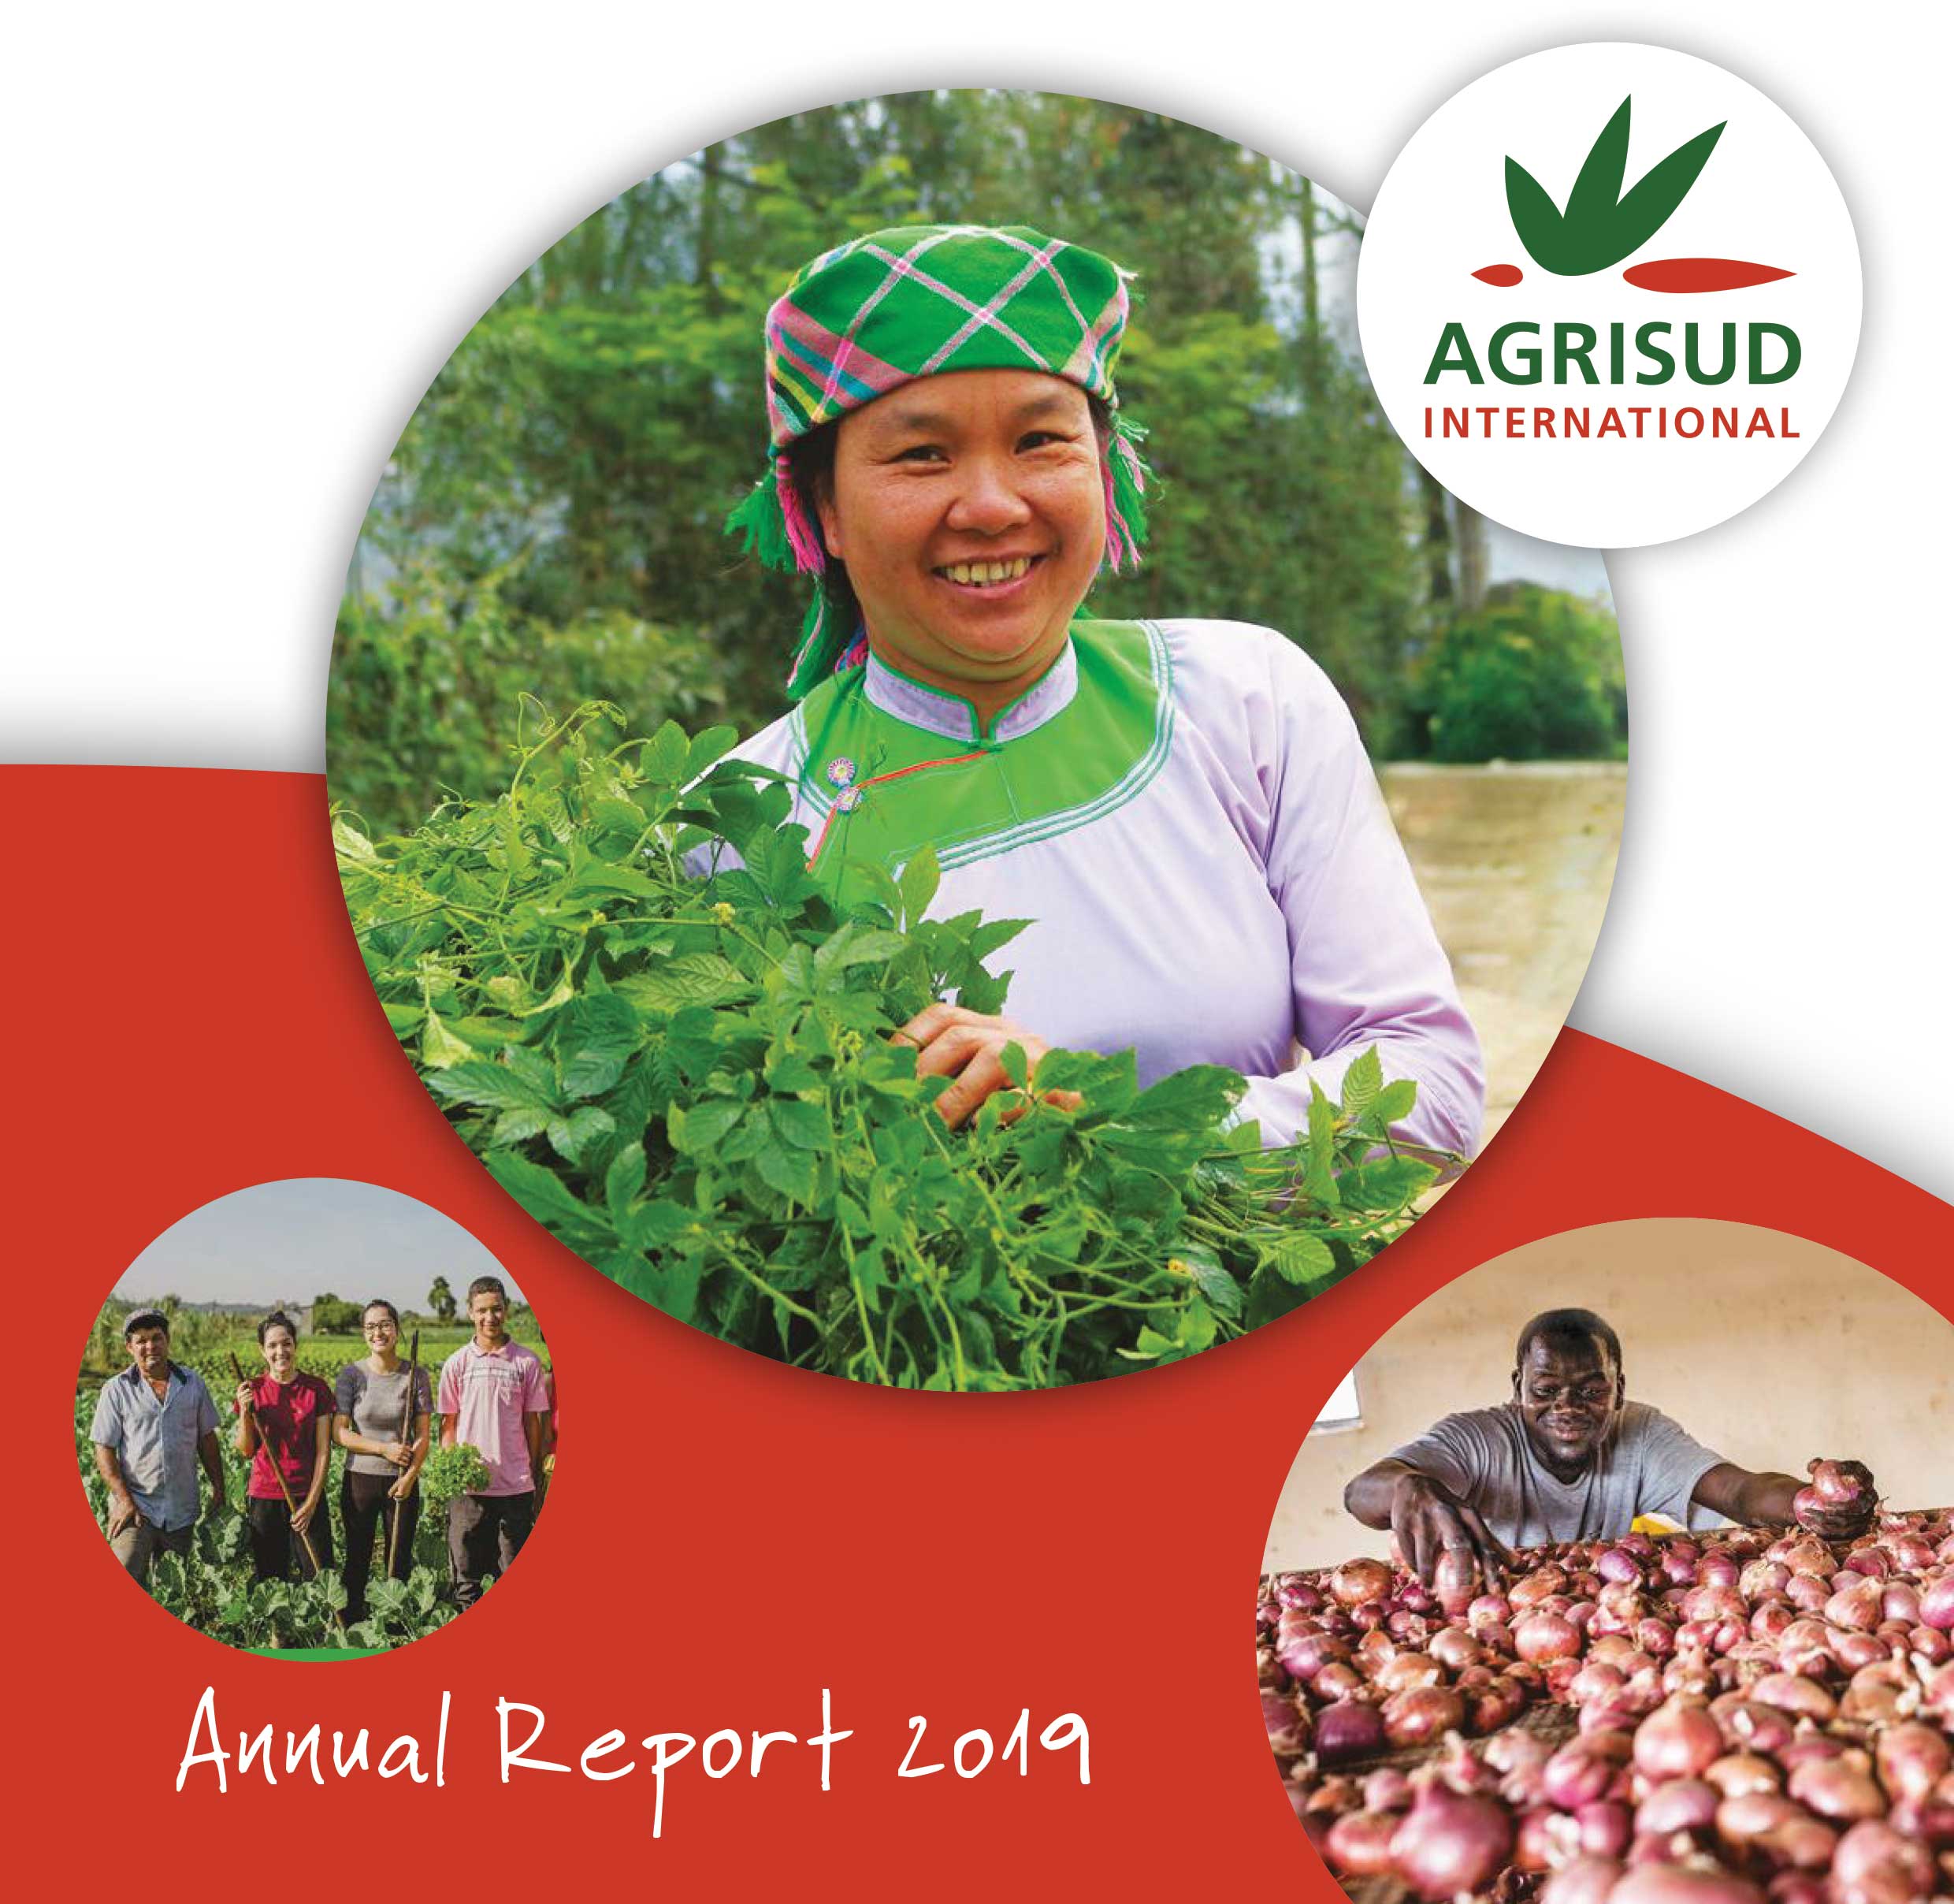 Rapport d'activité 2019 Agrisud International